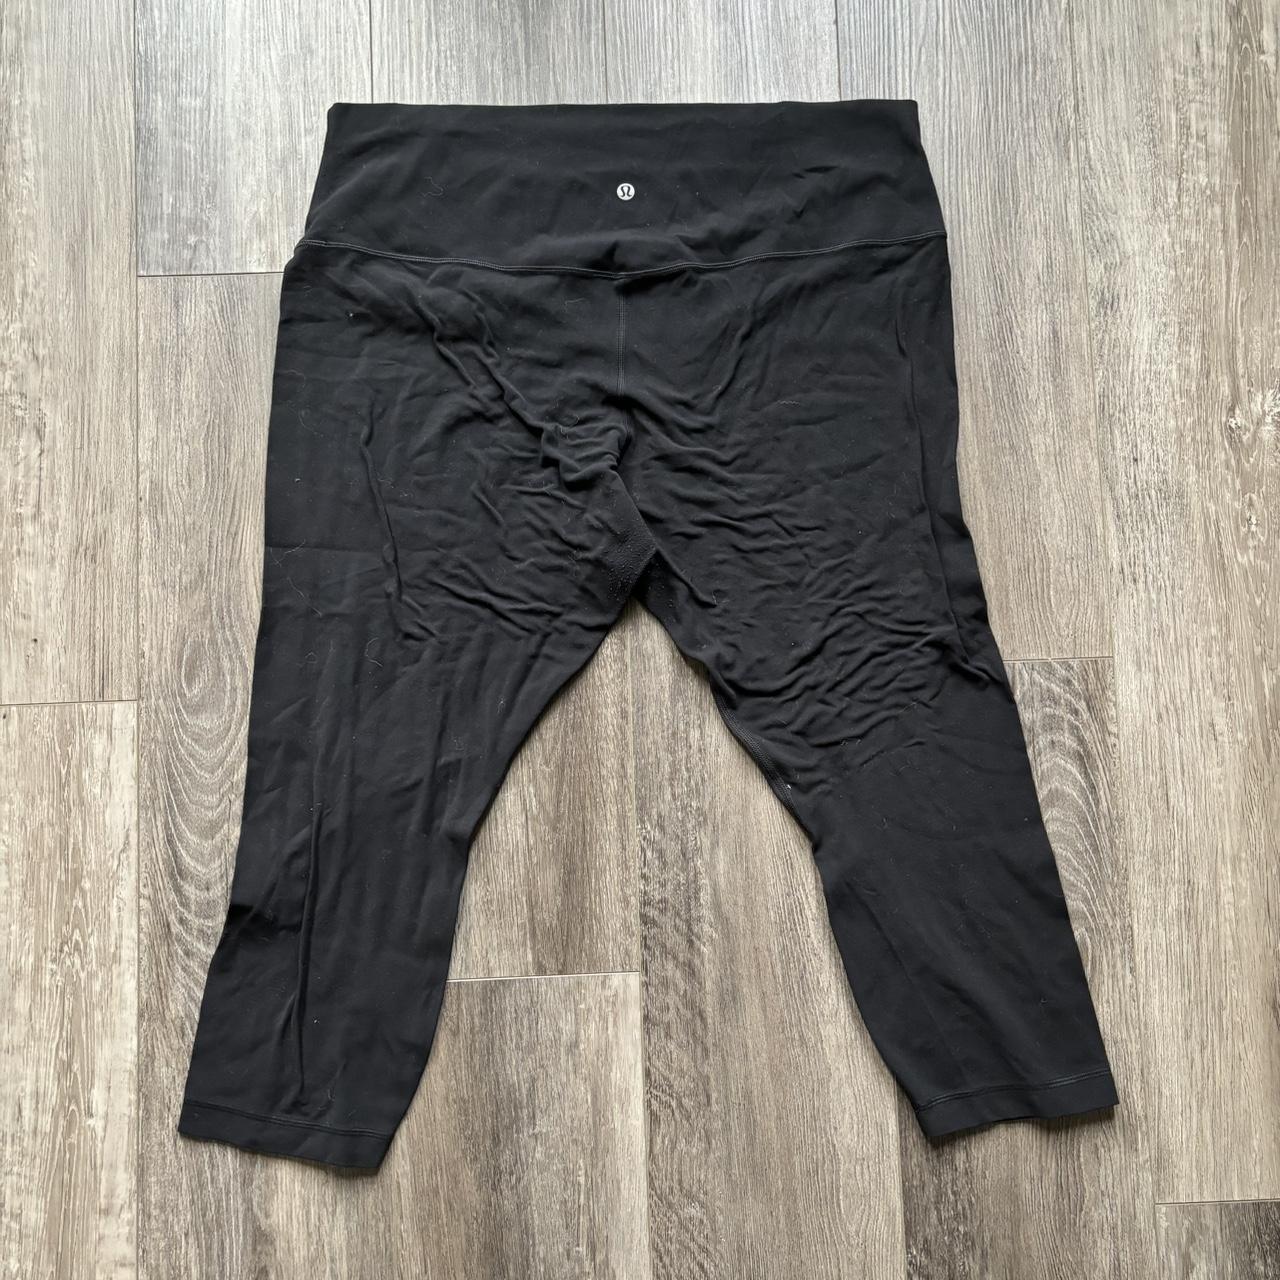 Lululemon black align leggings with pockets Size - Depop